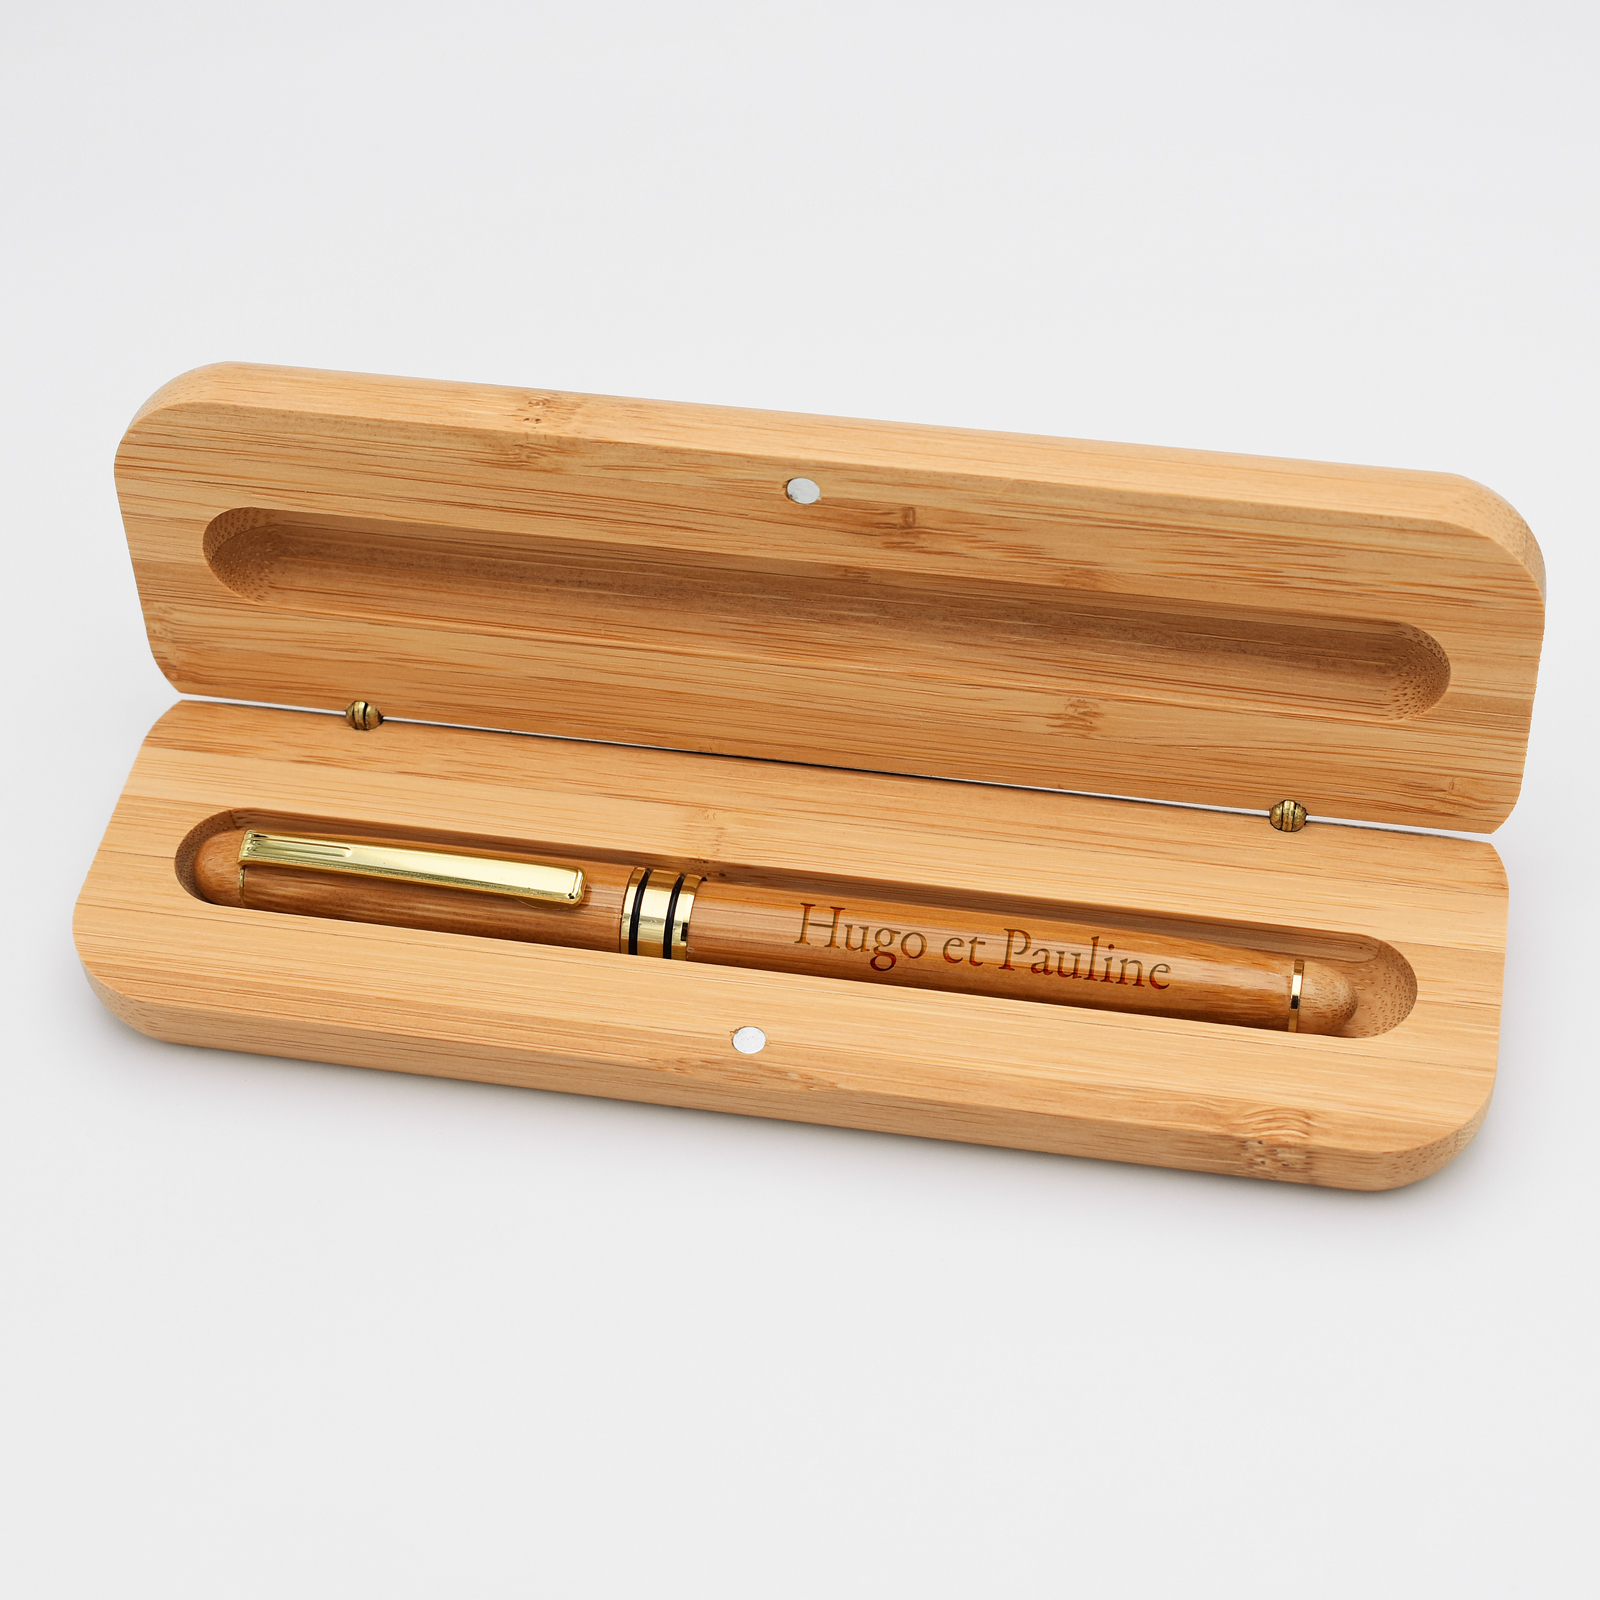 Mini stylo bille bois personnalisé